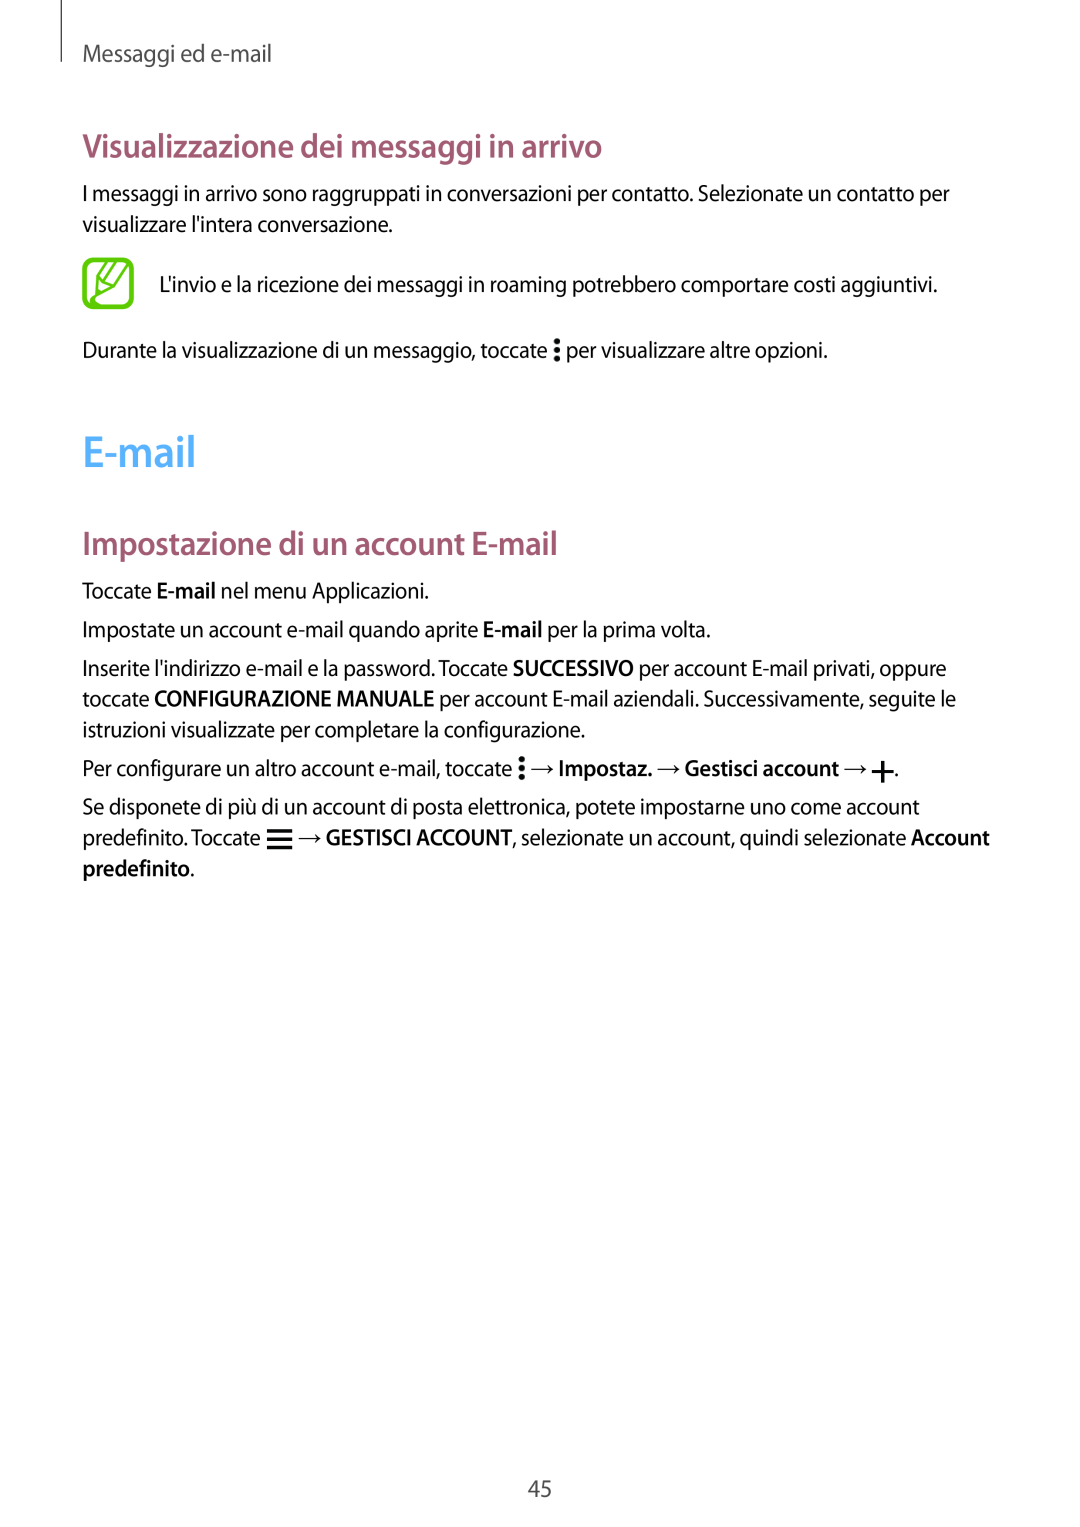 Samsung SM-G531FZAAPHN Visualizzazione dei messaggi in arrivo, Impostazione di un account E-mail, Messaggi ed e-mail 